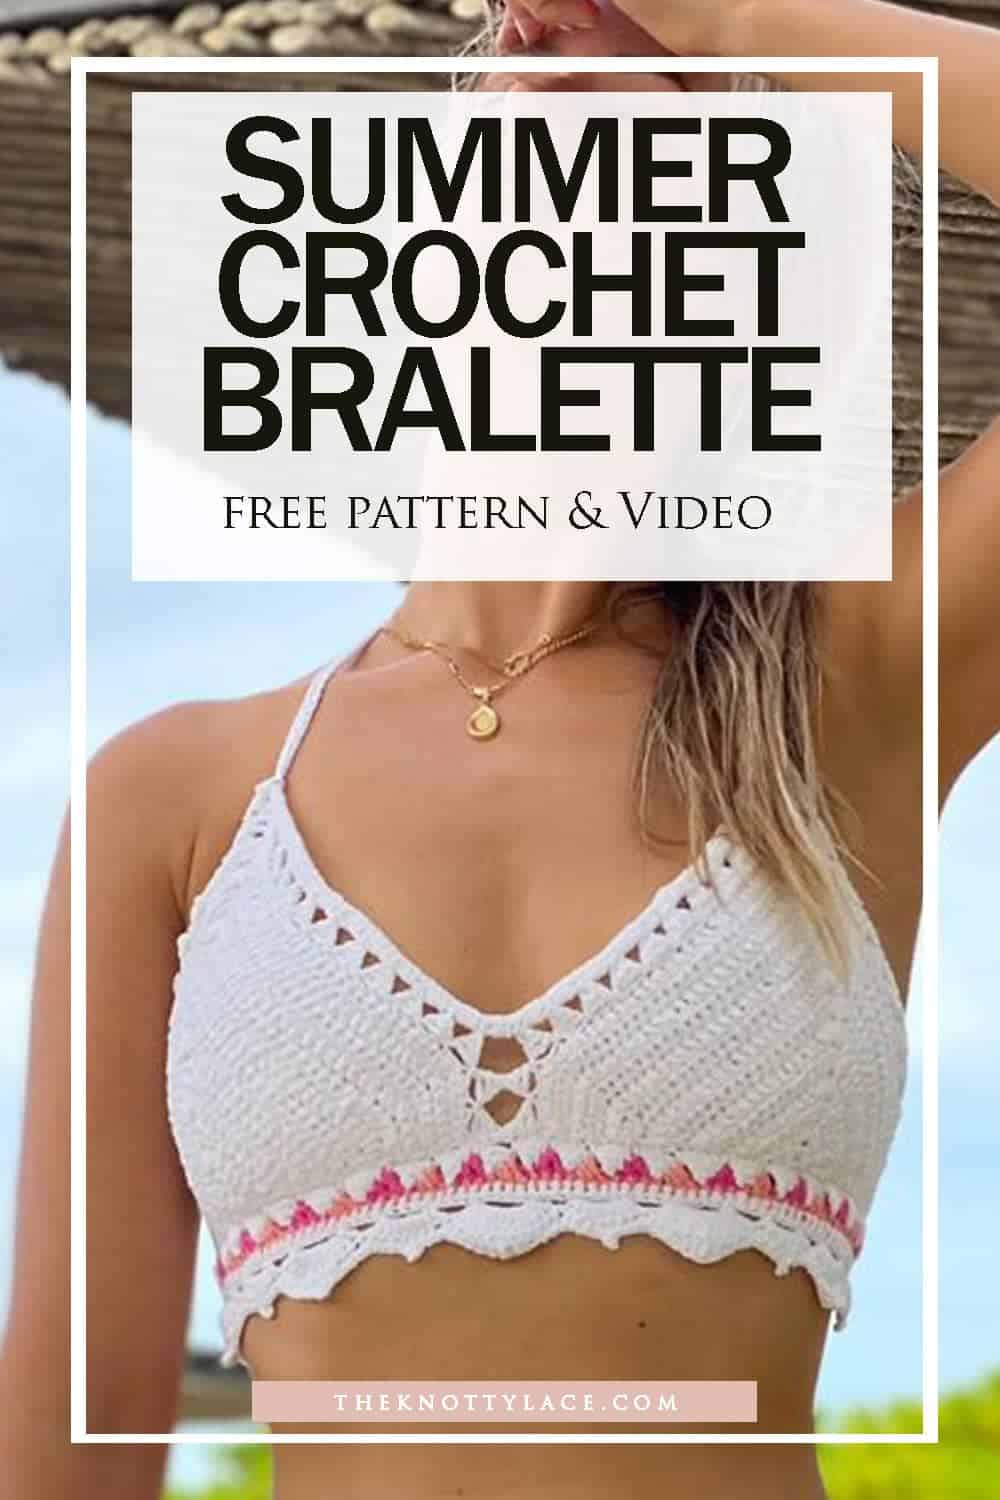 Fun & Free Crochet Bralette Pattern + Video Tutorial